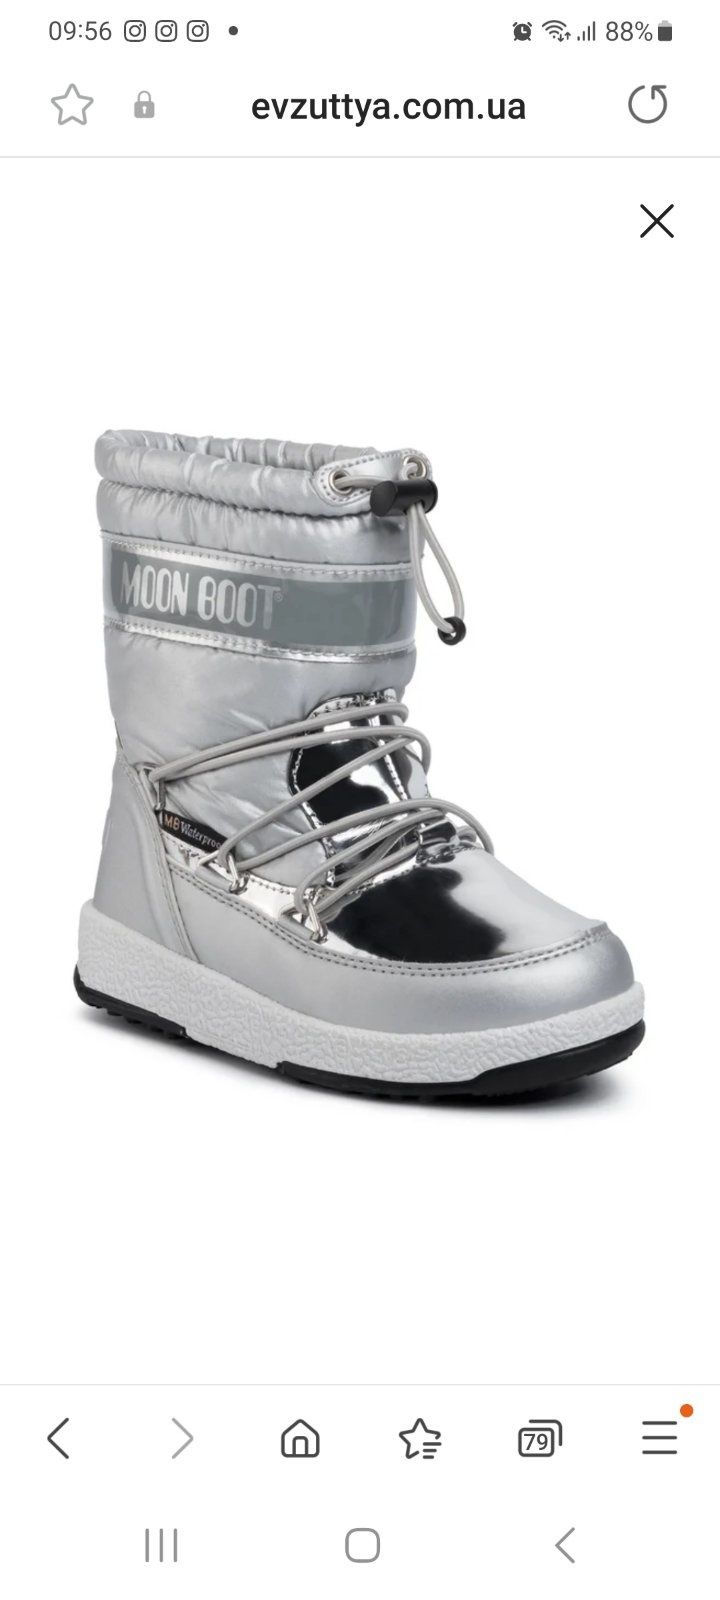 Moon boot зимові черевики валянки сапожки угг